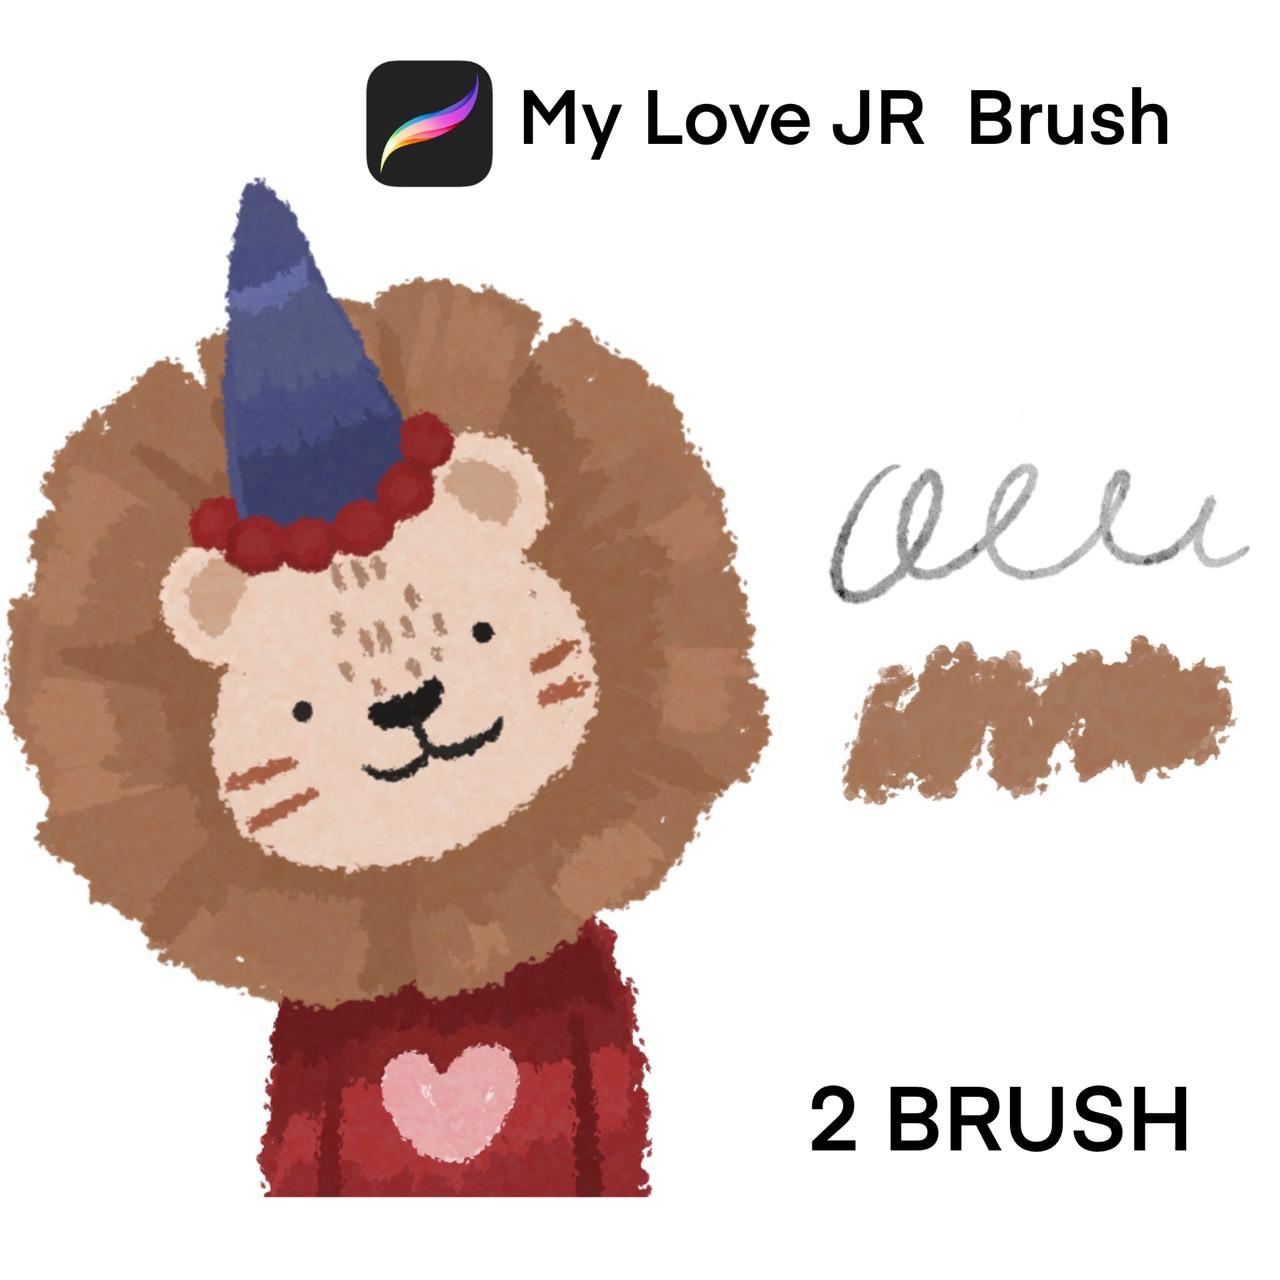 My Love JR Brush